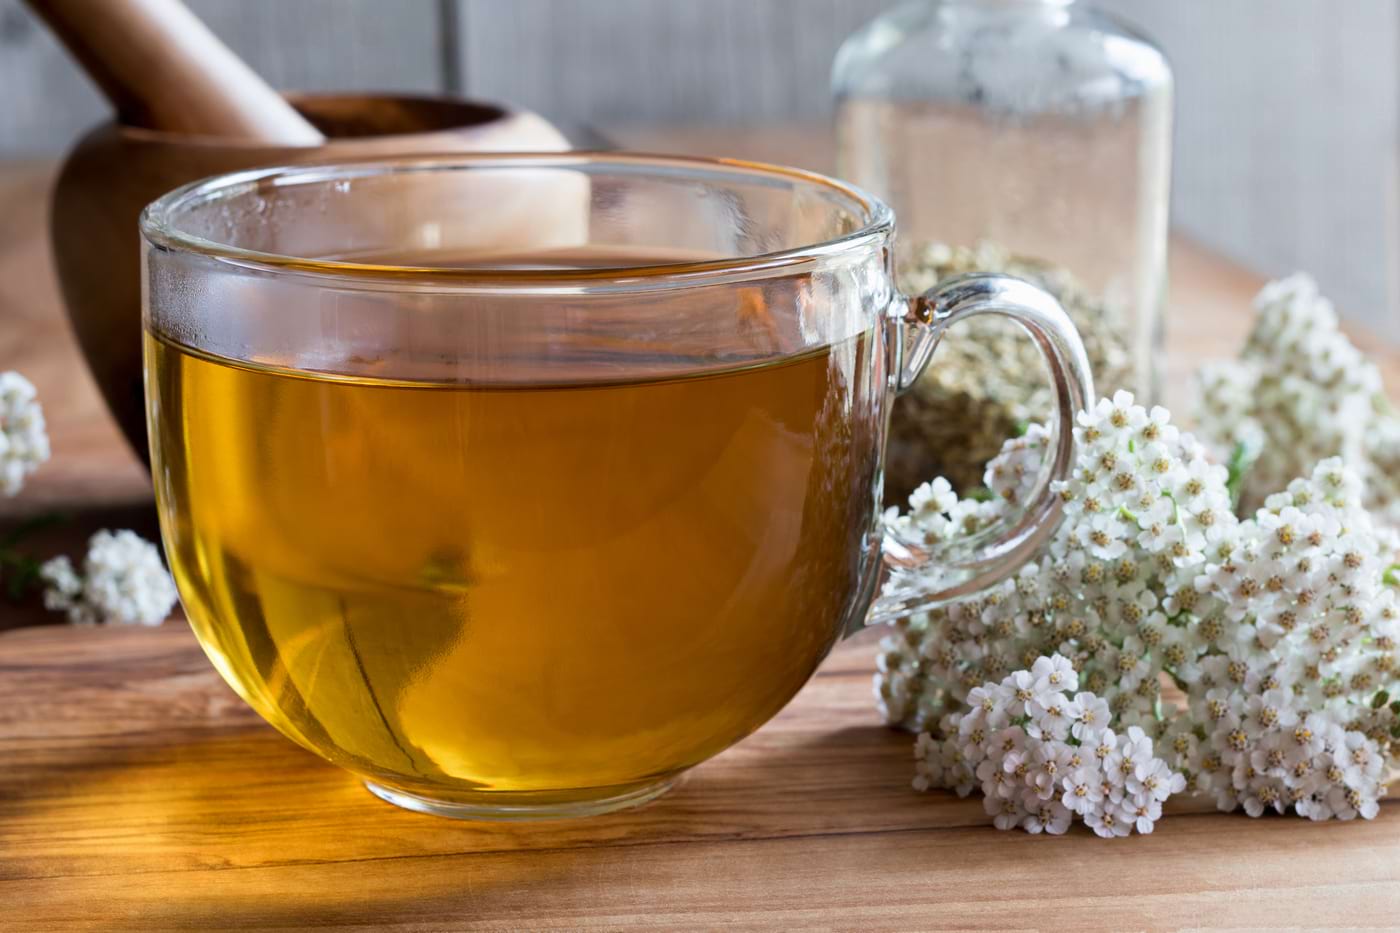 Ginger ceai varicoza, Este ghimbirul util pentru varice?